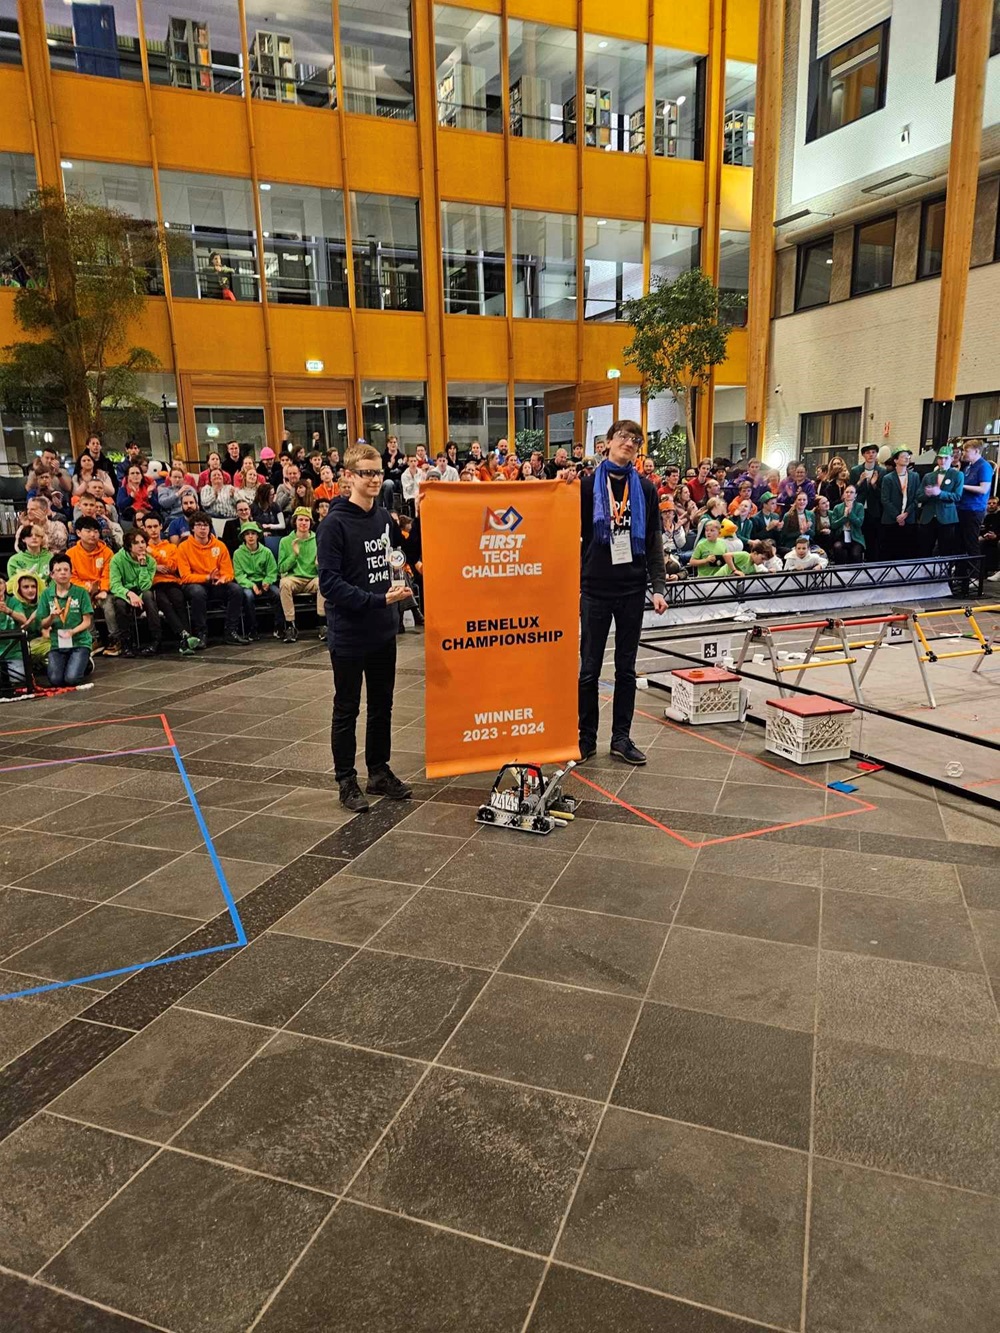 Lietuvos moksleivių robotikos komanda aplenkę 73 komandas Europoje keliauja į pasaulio finalą | imv.lt nuotr.